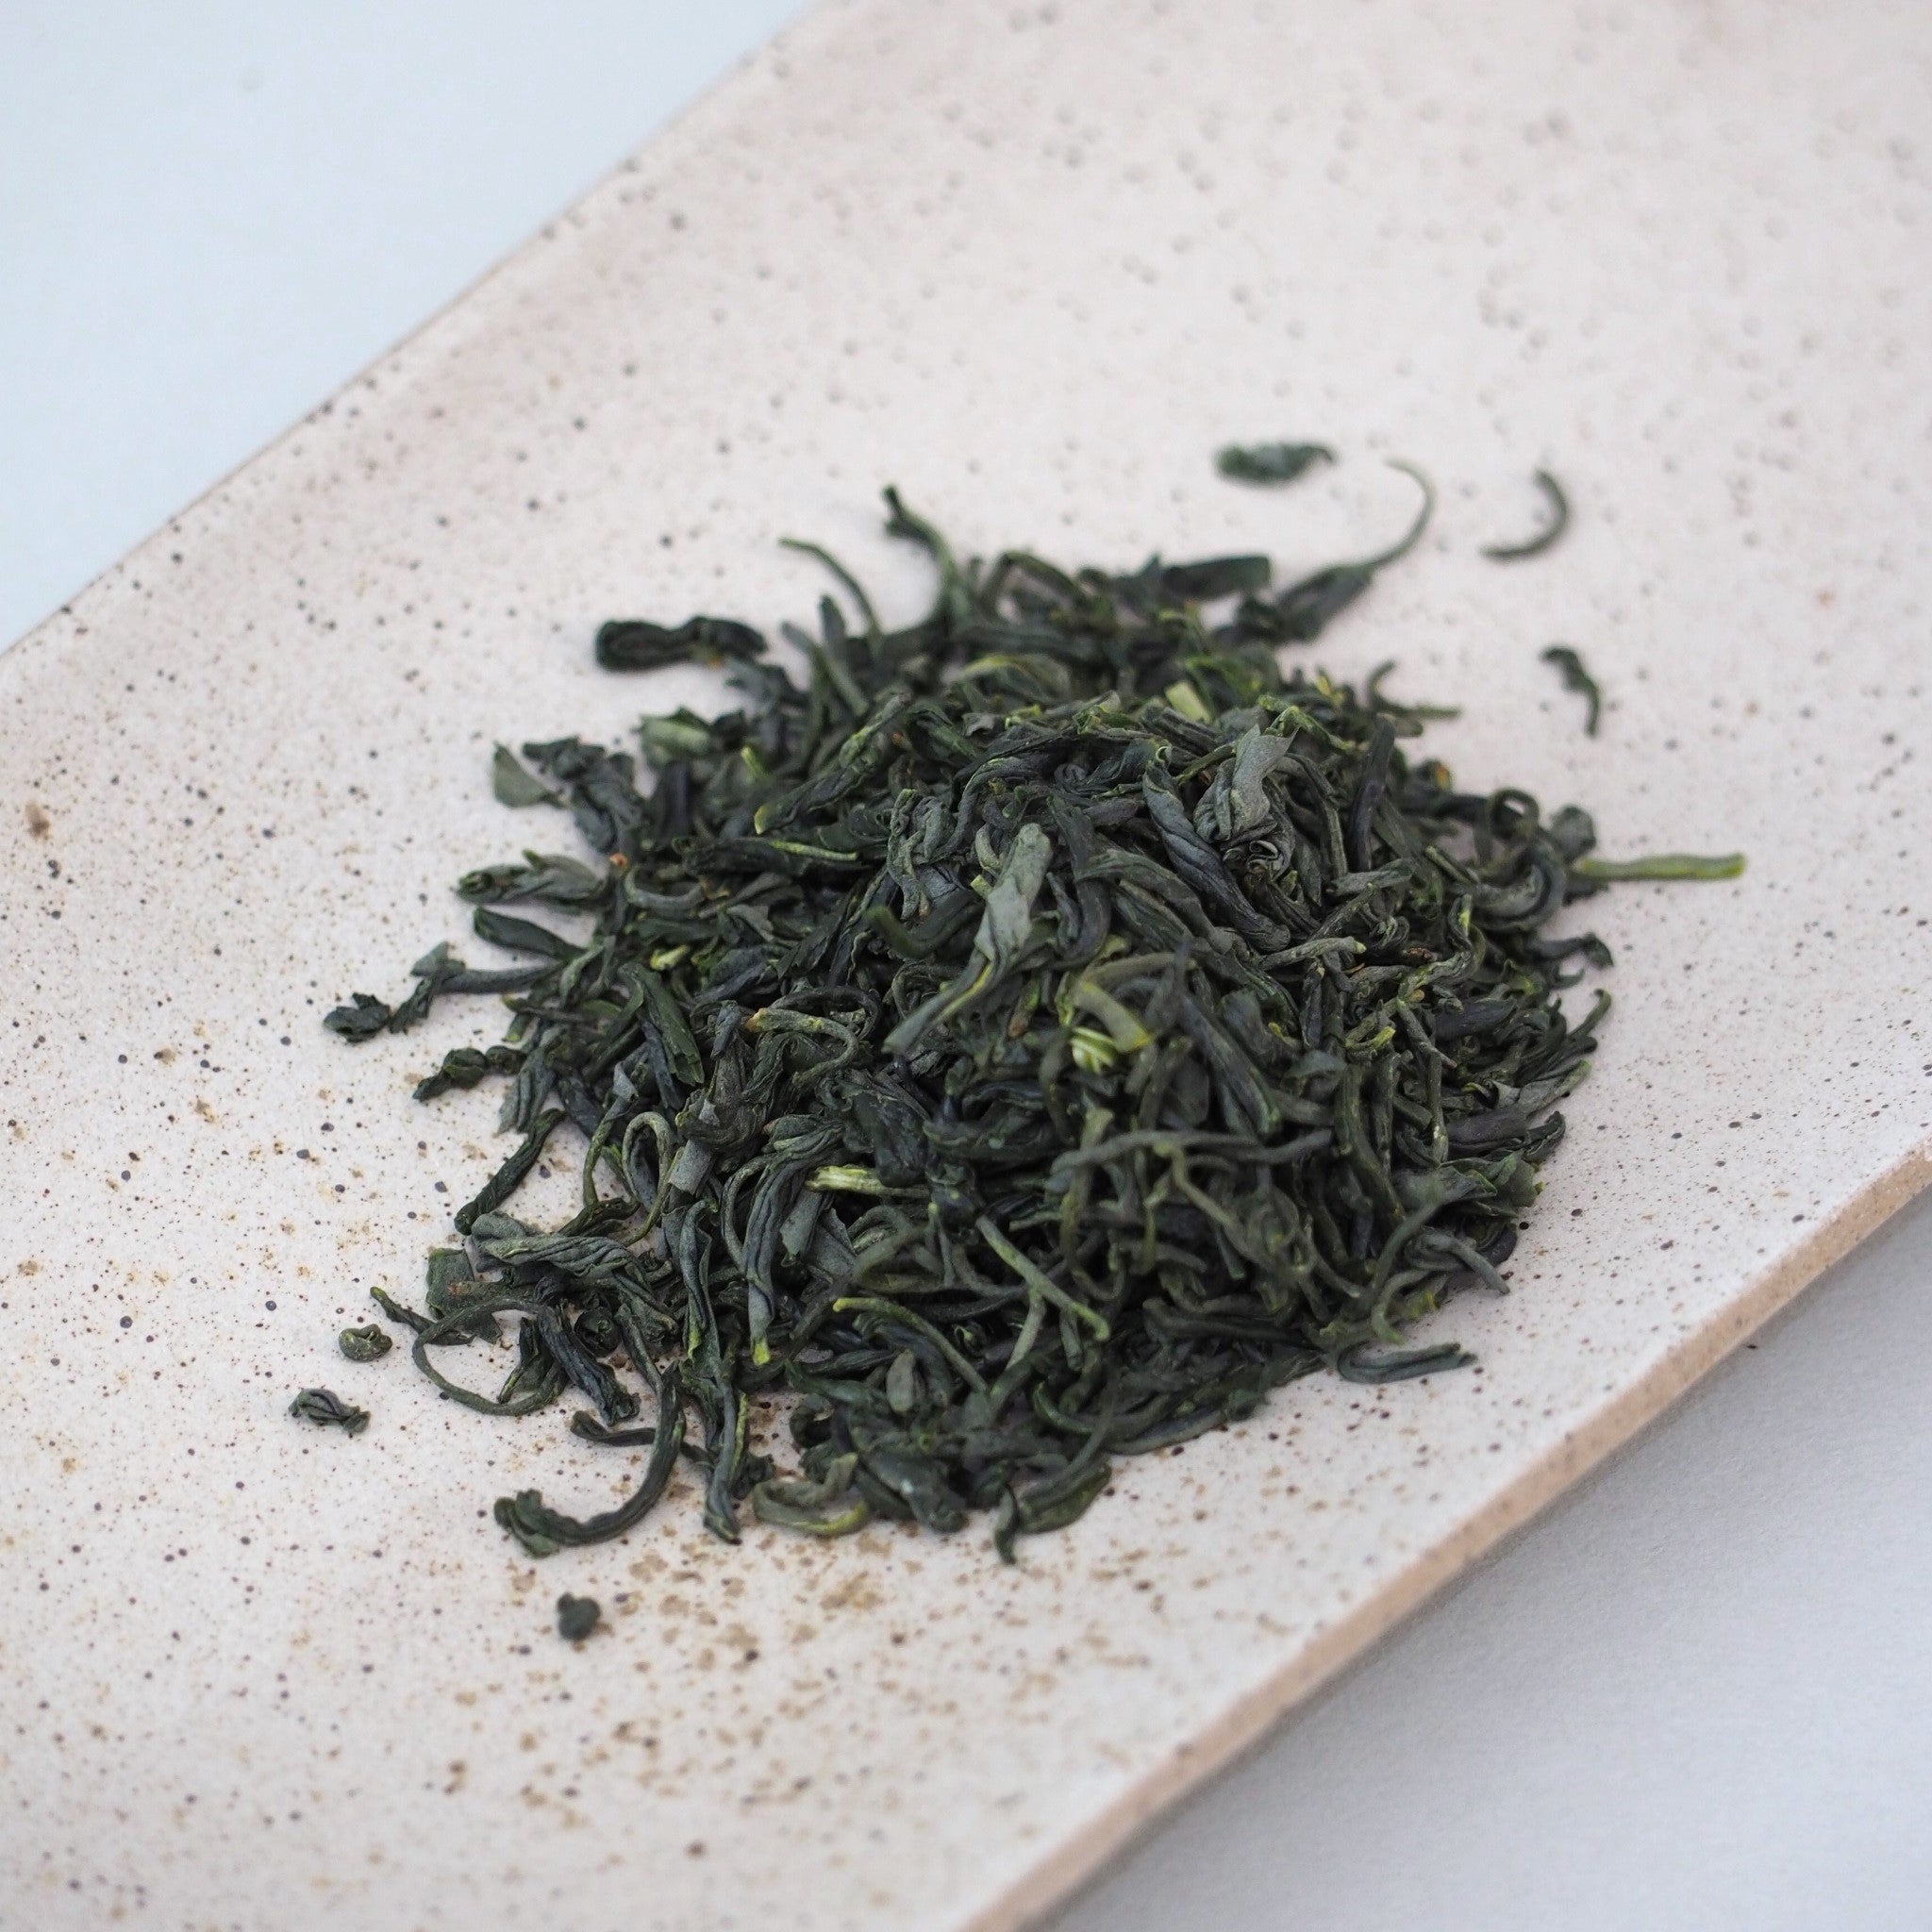 高千穂釜炒り茶の茶葉画像です。茶葉の色は深い緑色、茶葉の形状は少し捩れています。